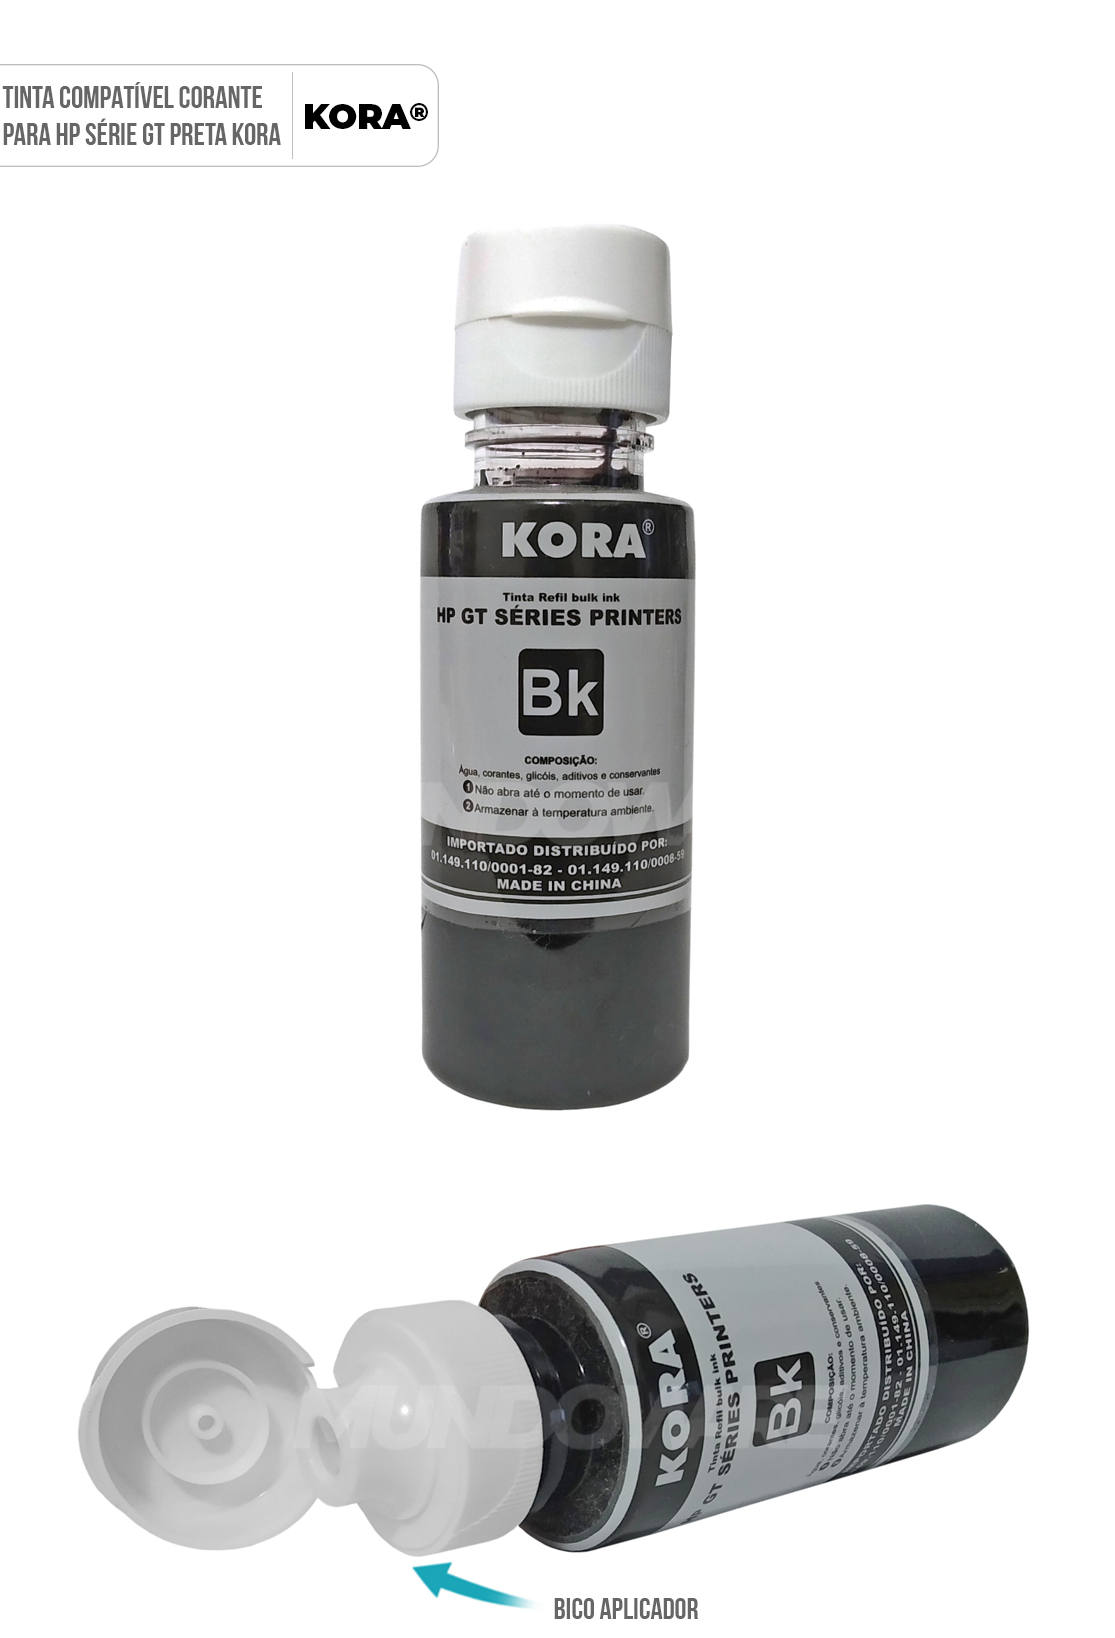 Tinta Preta Kora Compatvel com GT53 Corante para HP GT5822 GT5820 GT5810 InkTank 419 416 Refil 90ml